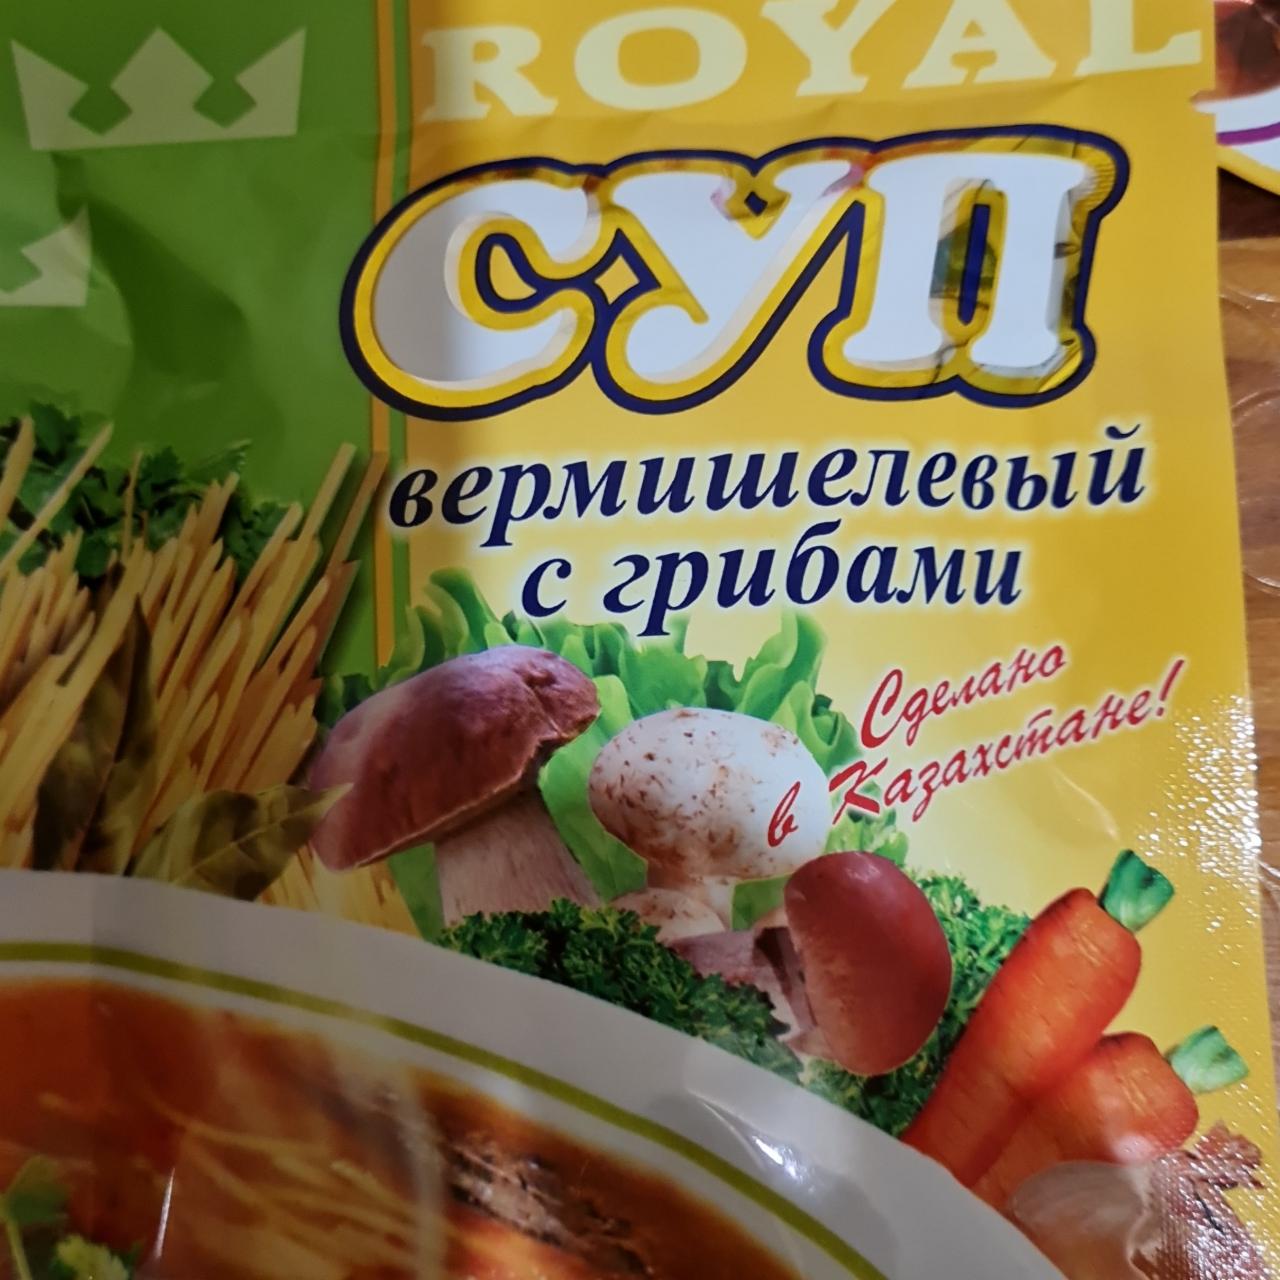 Фото - суп вермишелевый с грибами Royal Food